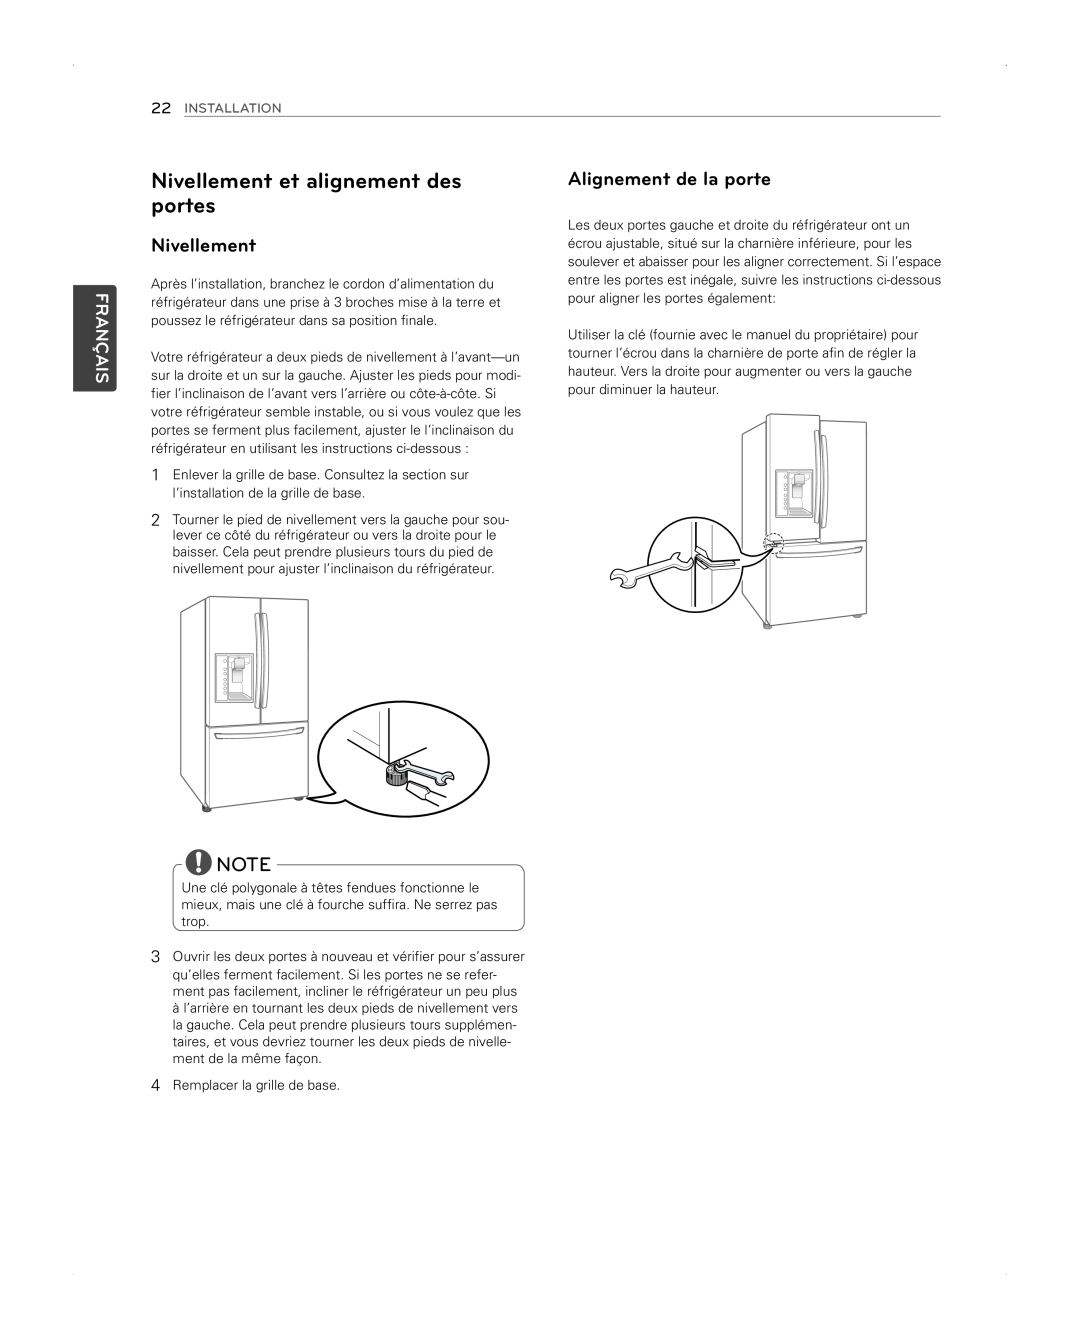 LG Electronics LFX31945ST owner manual Nivellement et alignement des portes, Alignement de la porte, Français, Installation 